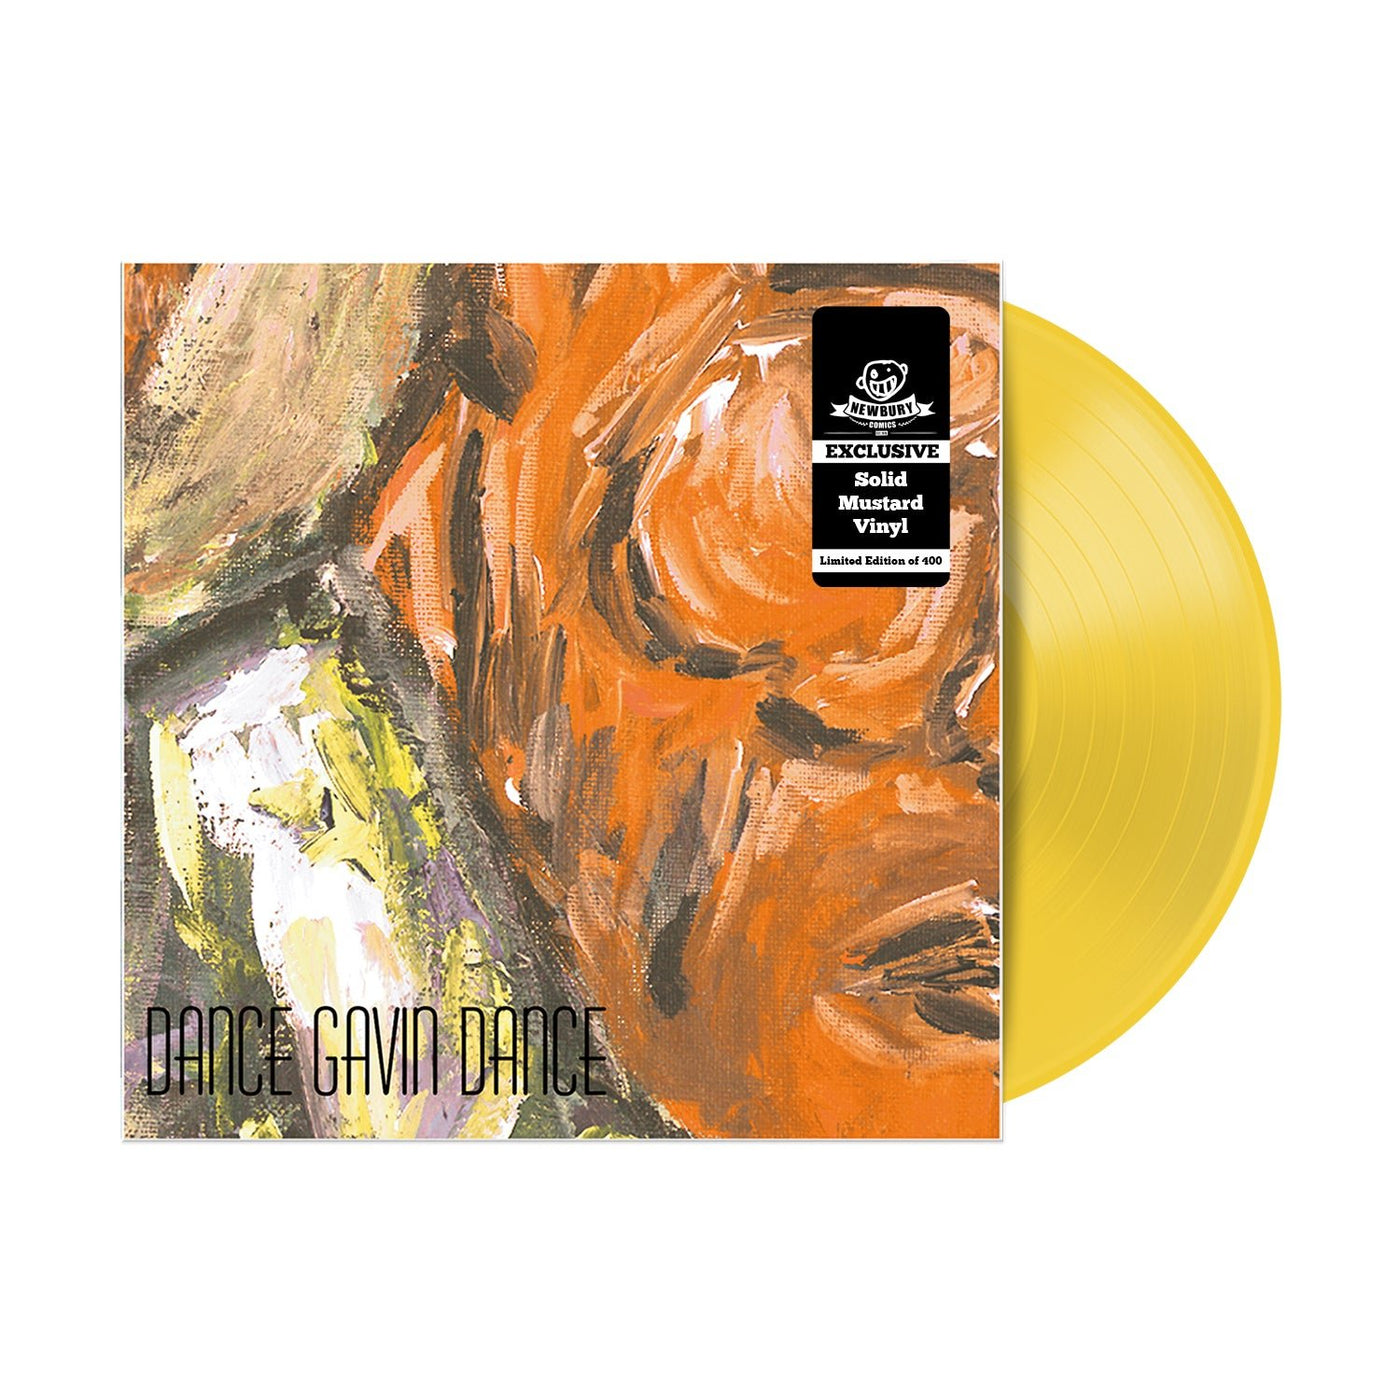 Whatever I Say Is Royal Ocean Mustard Vinyl LP